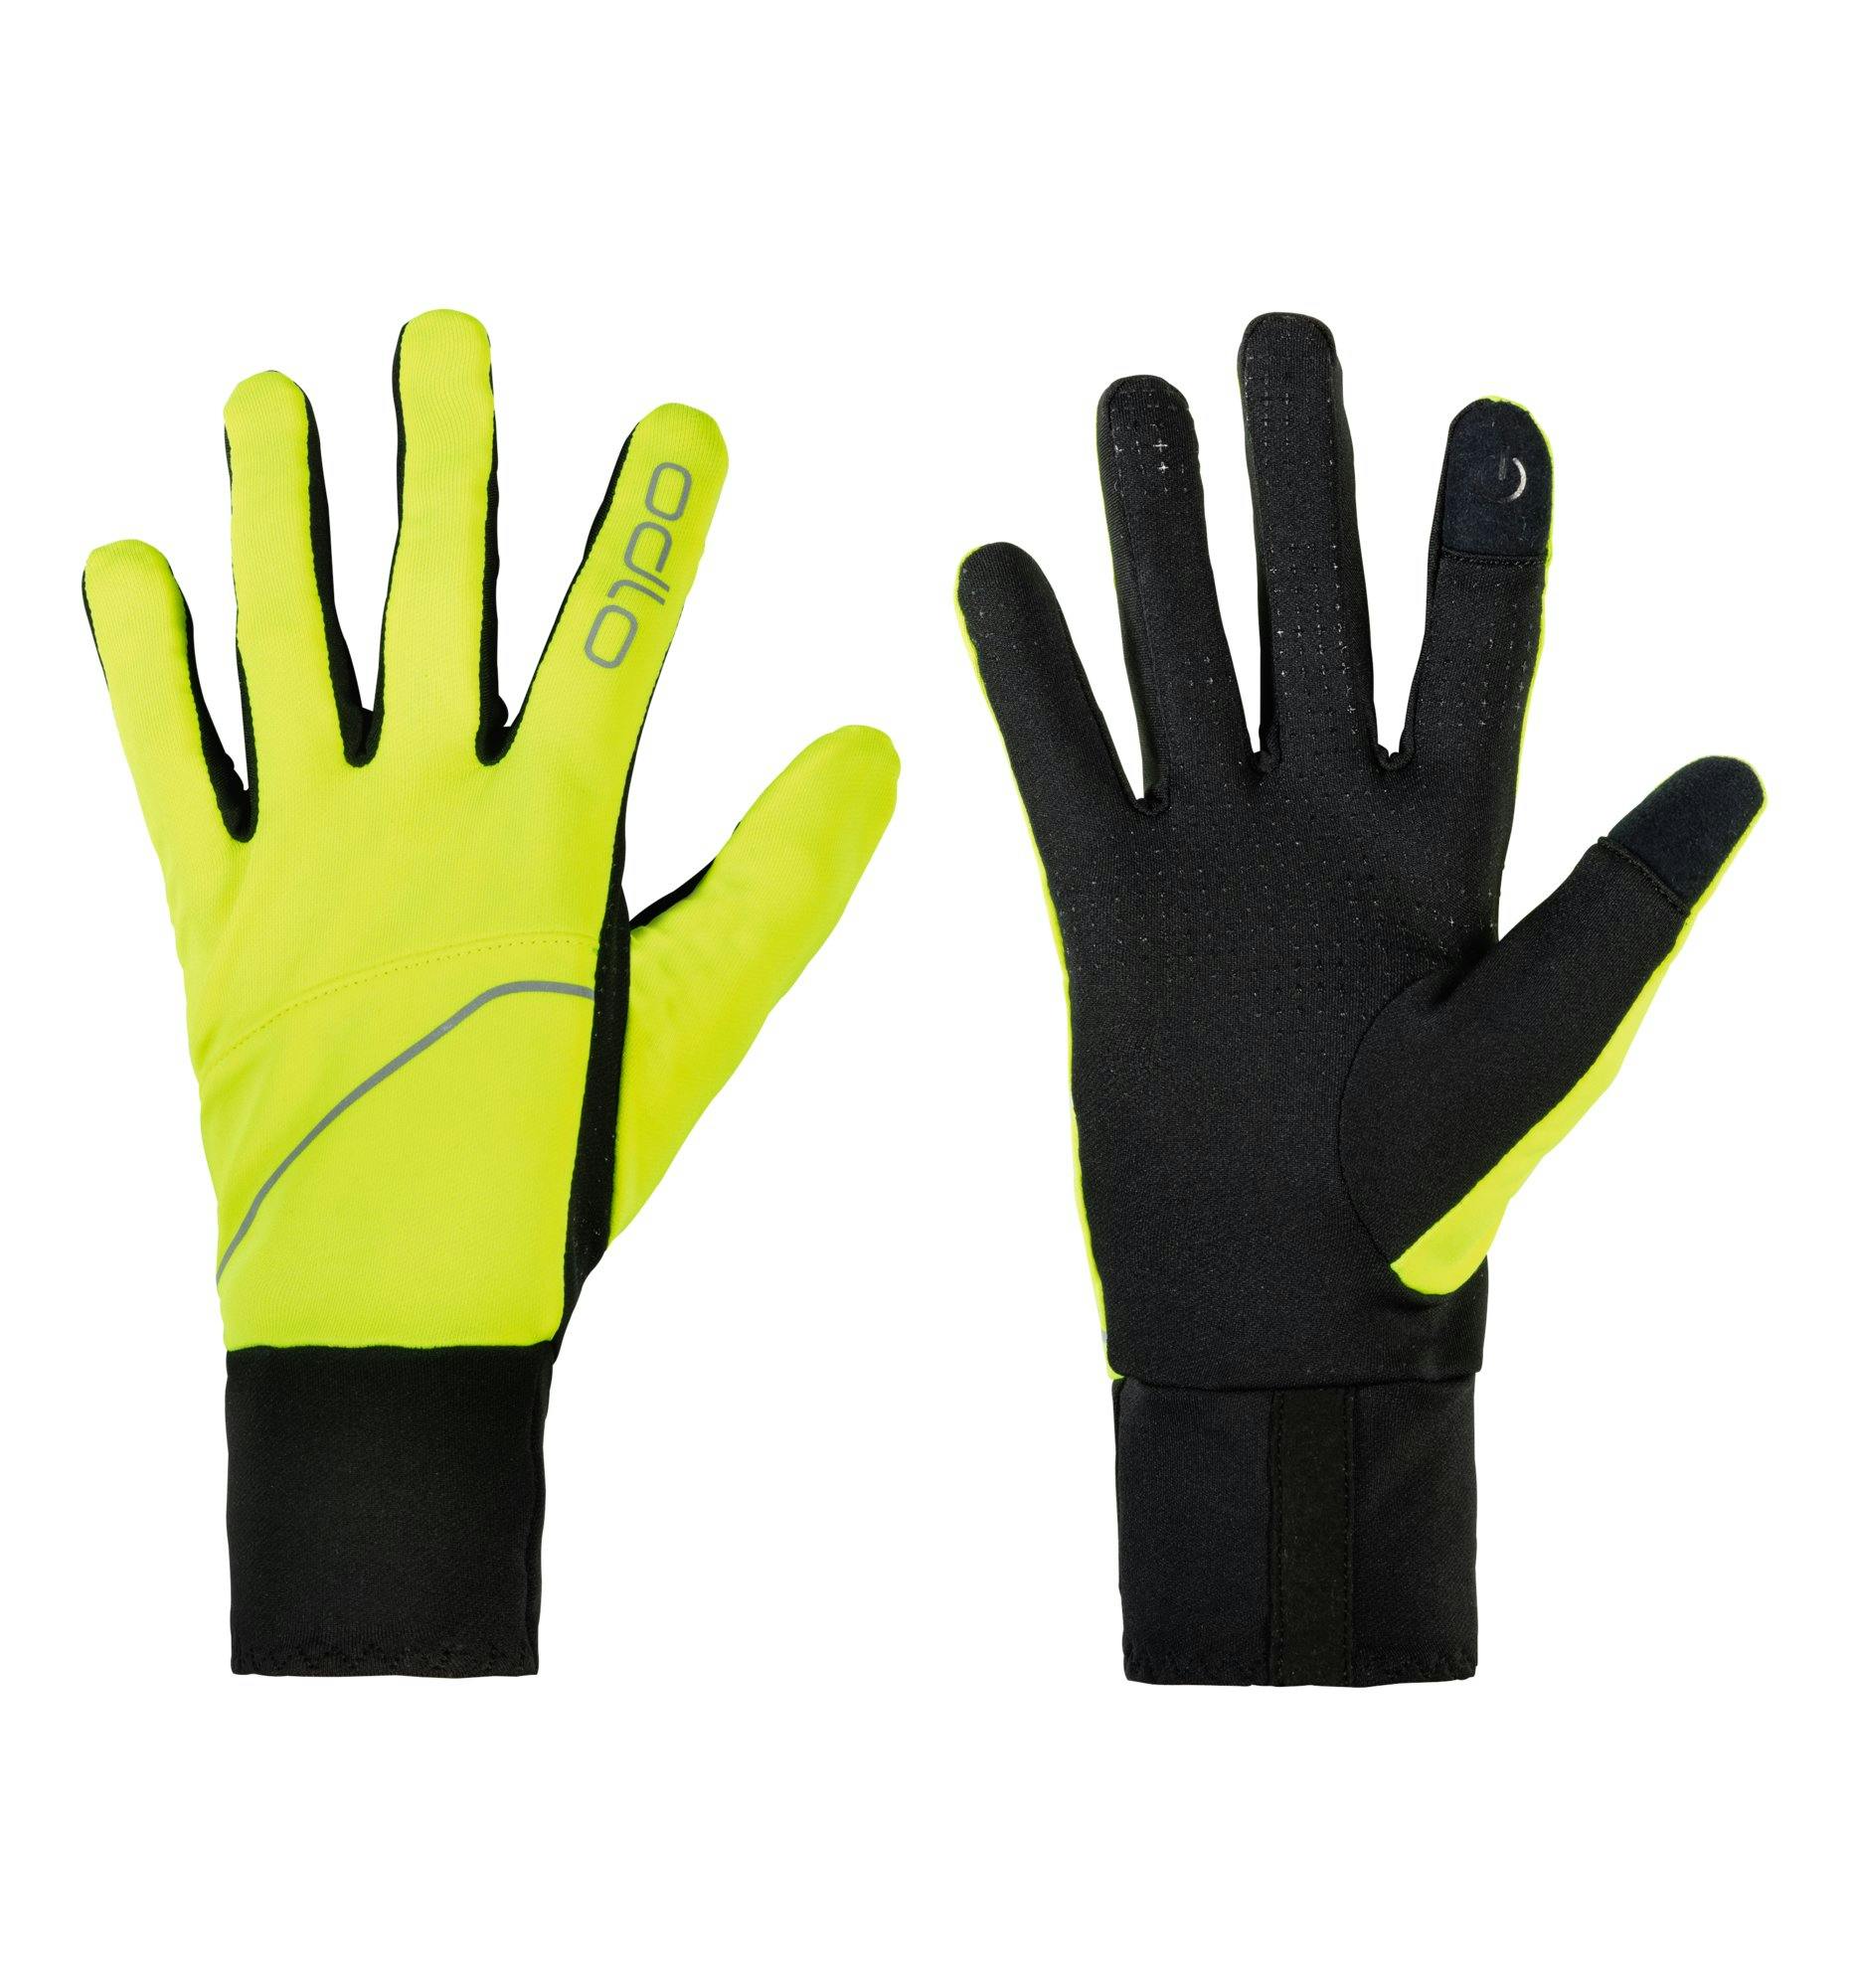 Odlo Intensity Safety Gloves